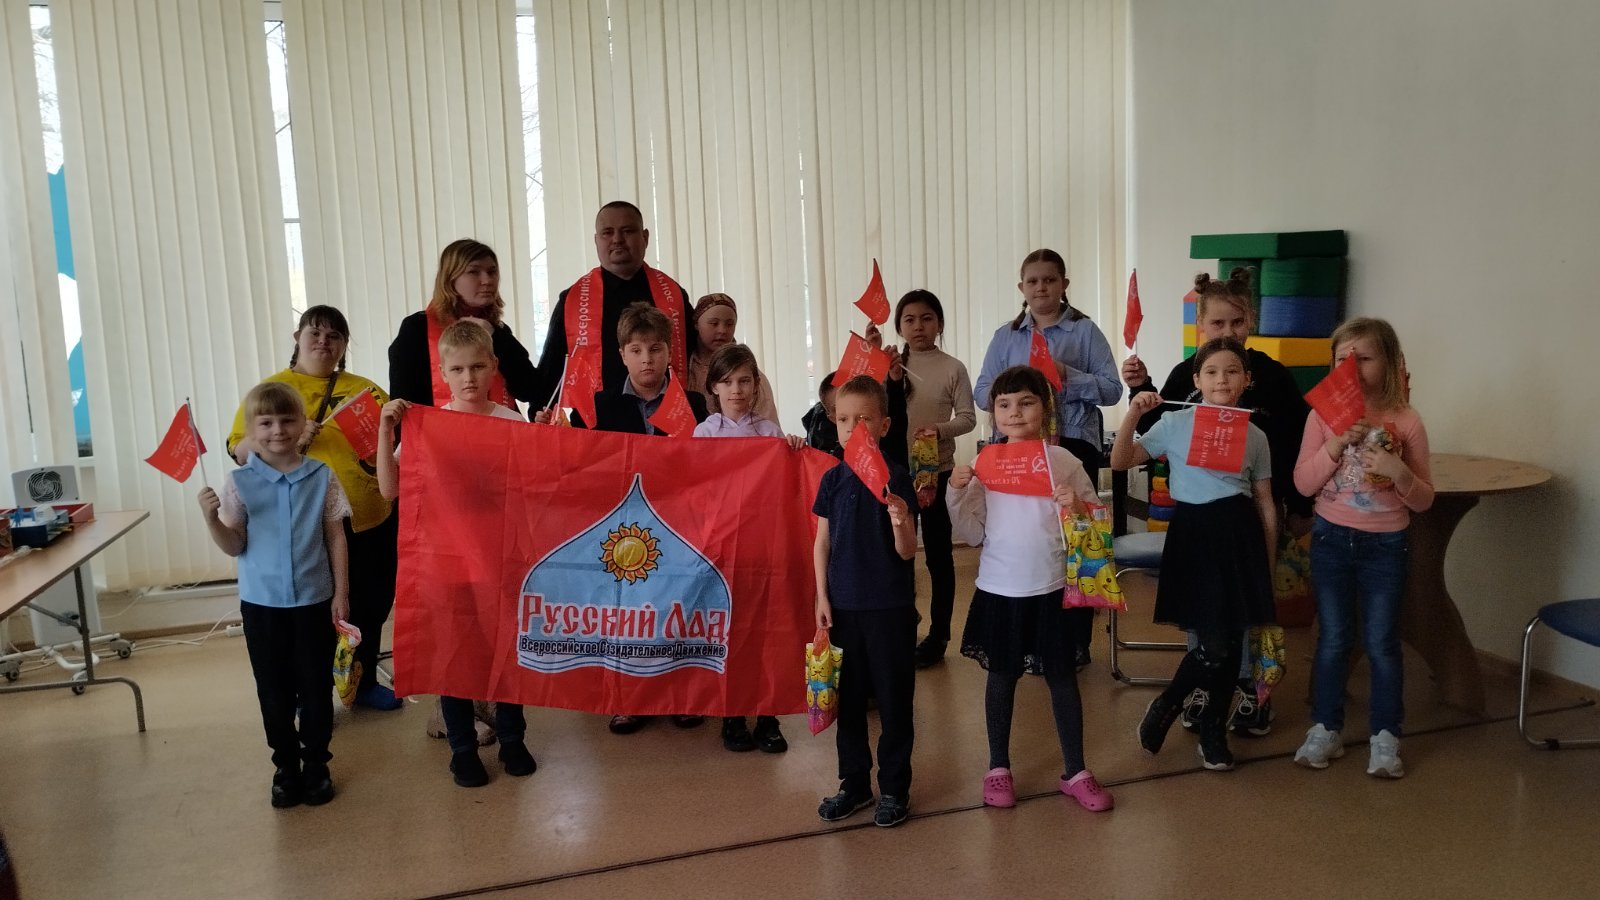 Активисты движения «Русский лад» провели для воспитанников социального центра урок, посвящённый 100-летию Юрия Гагарина